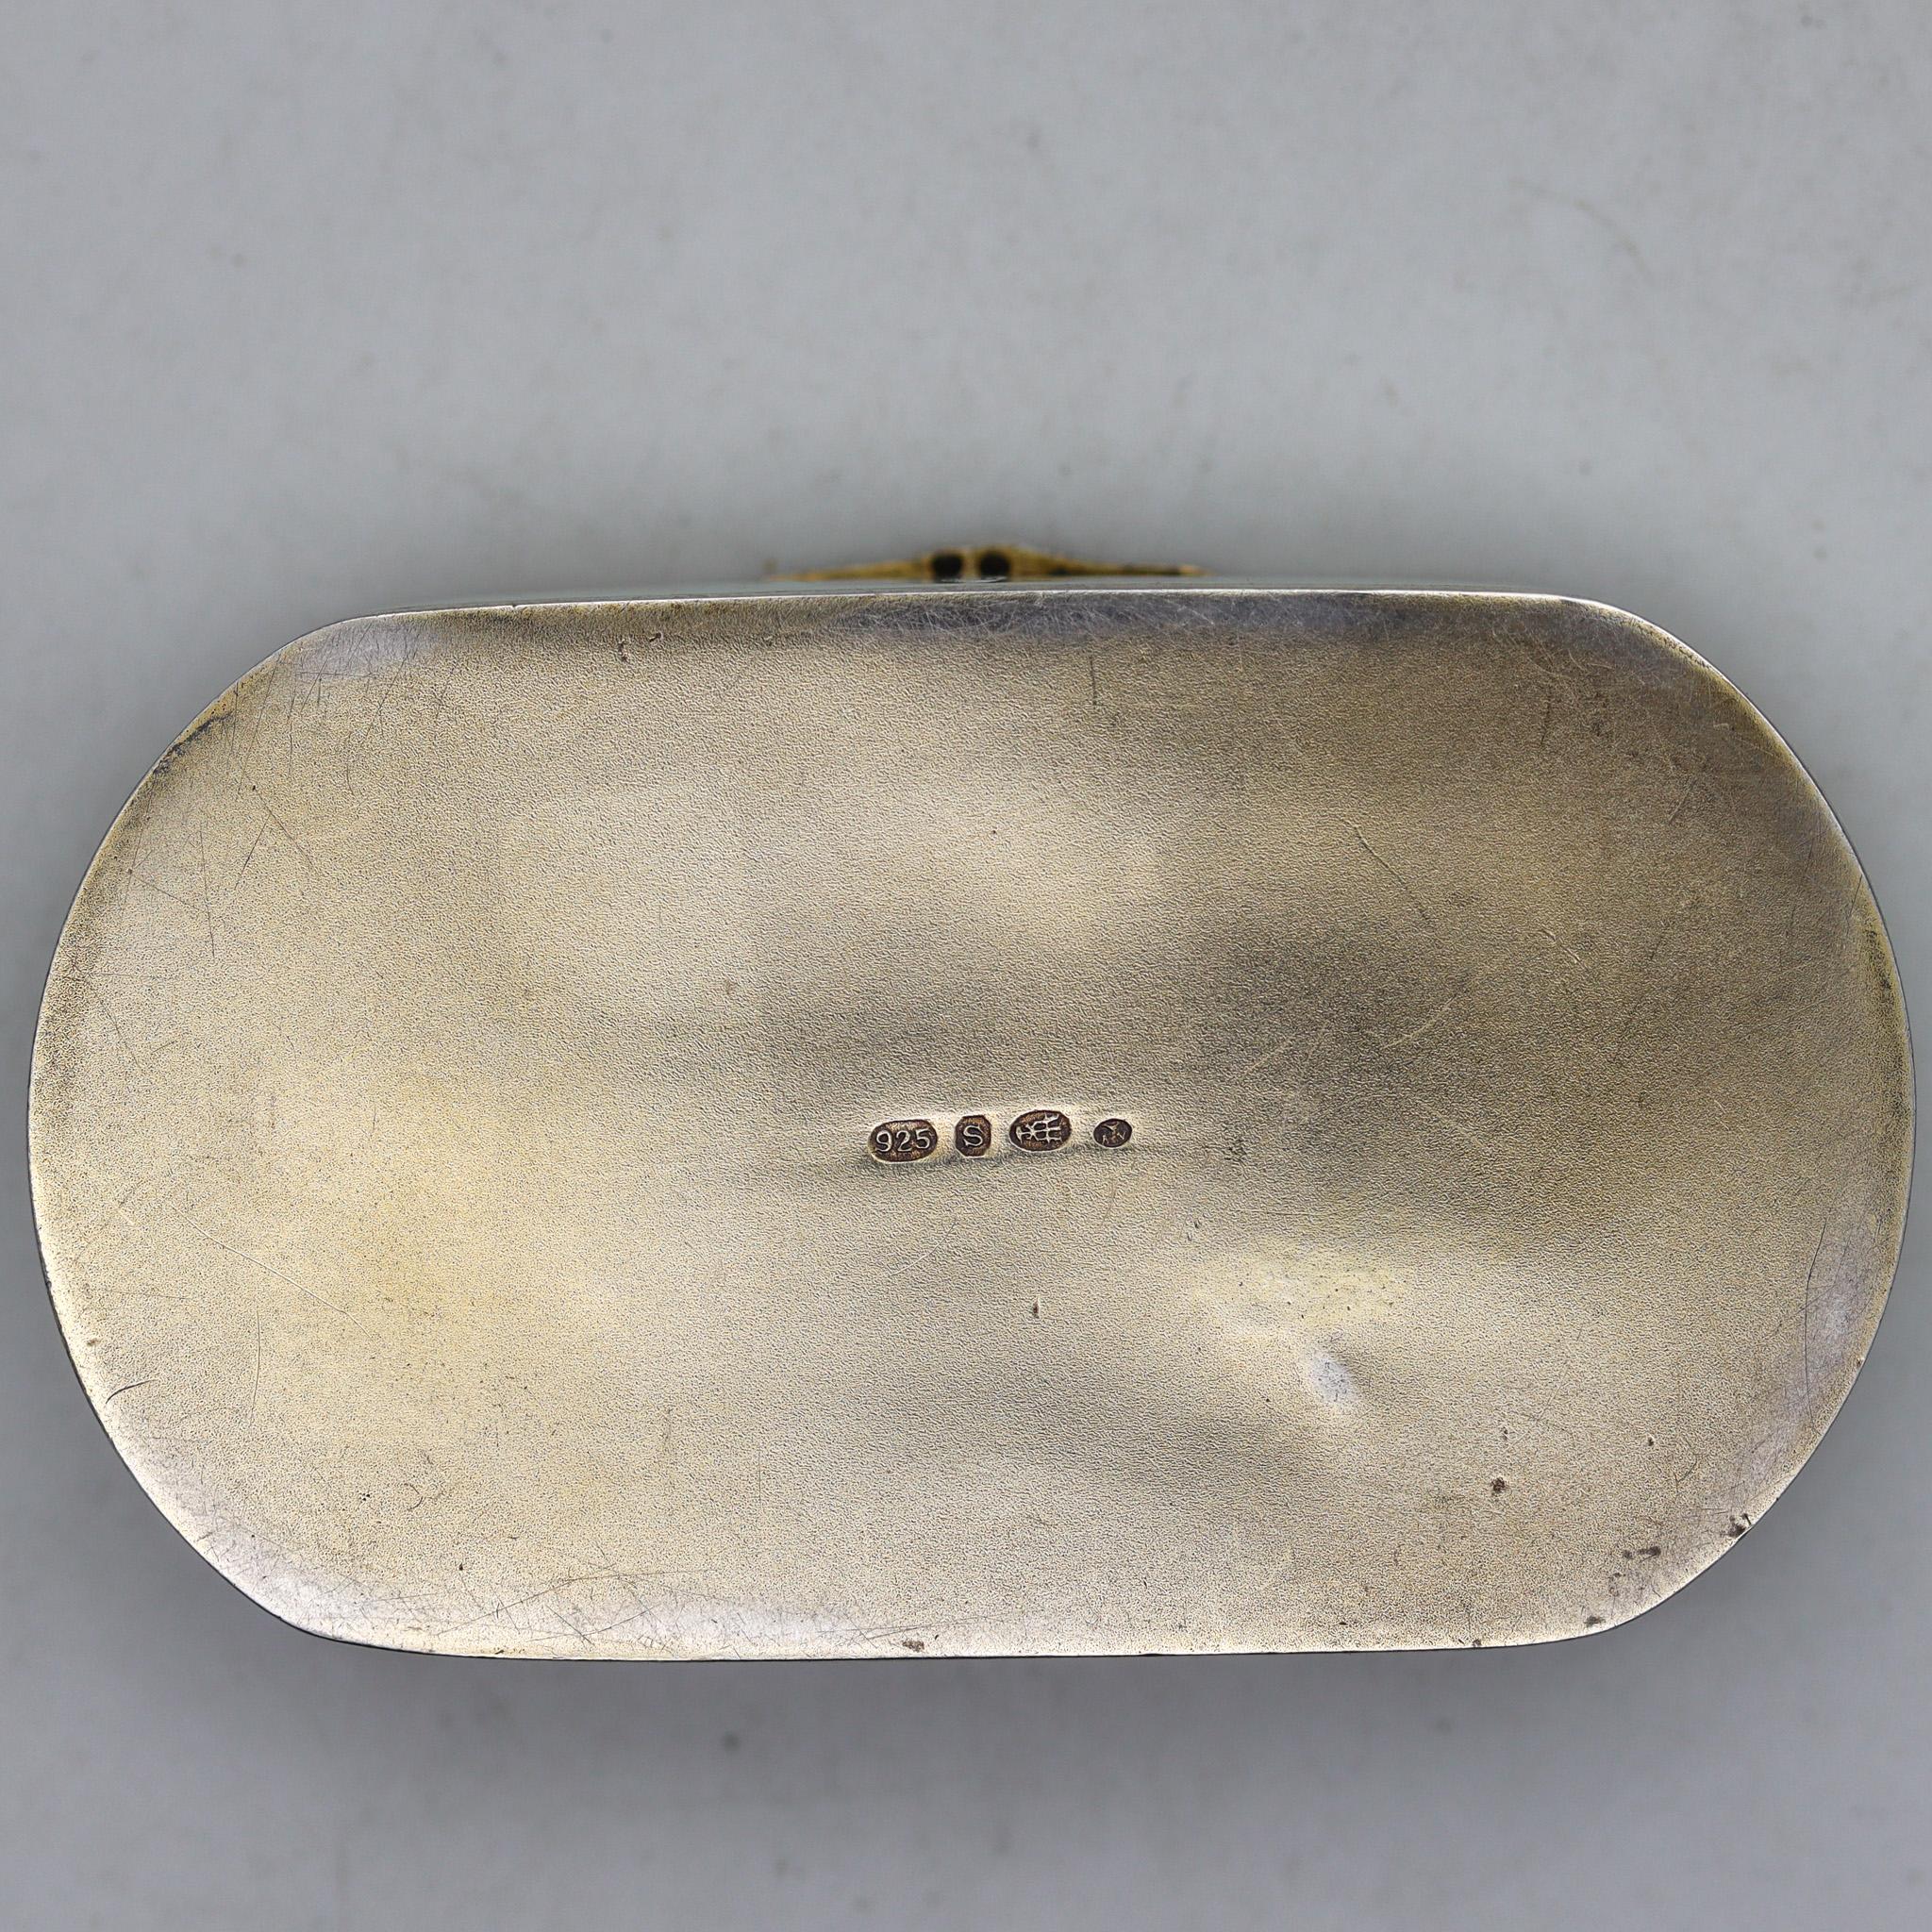 Boîte à pilules émaillée et guillochée, conçue par David Andersen.

Rarissime boîte à pilules en émail du début du XXe siècle, créée en Norvège à la fin de la période édouardienne et de l'art nouveau dans l'atelier de David Andersen, vers 1910.